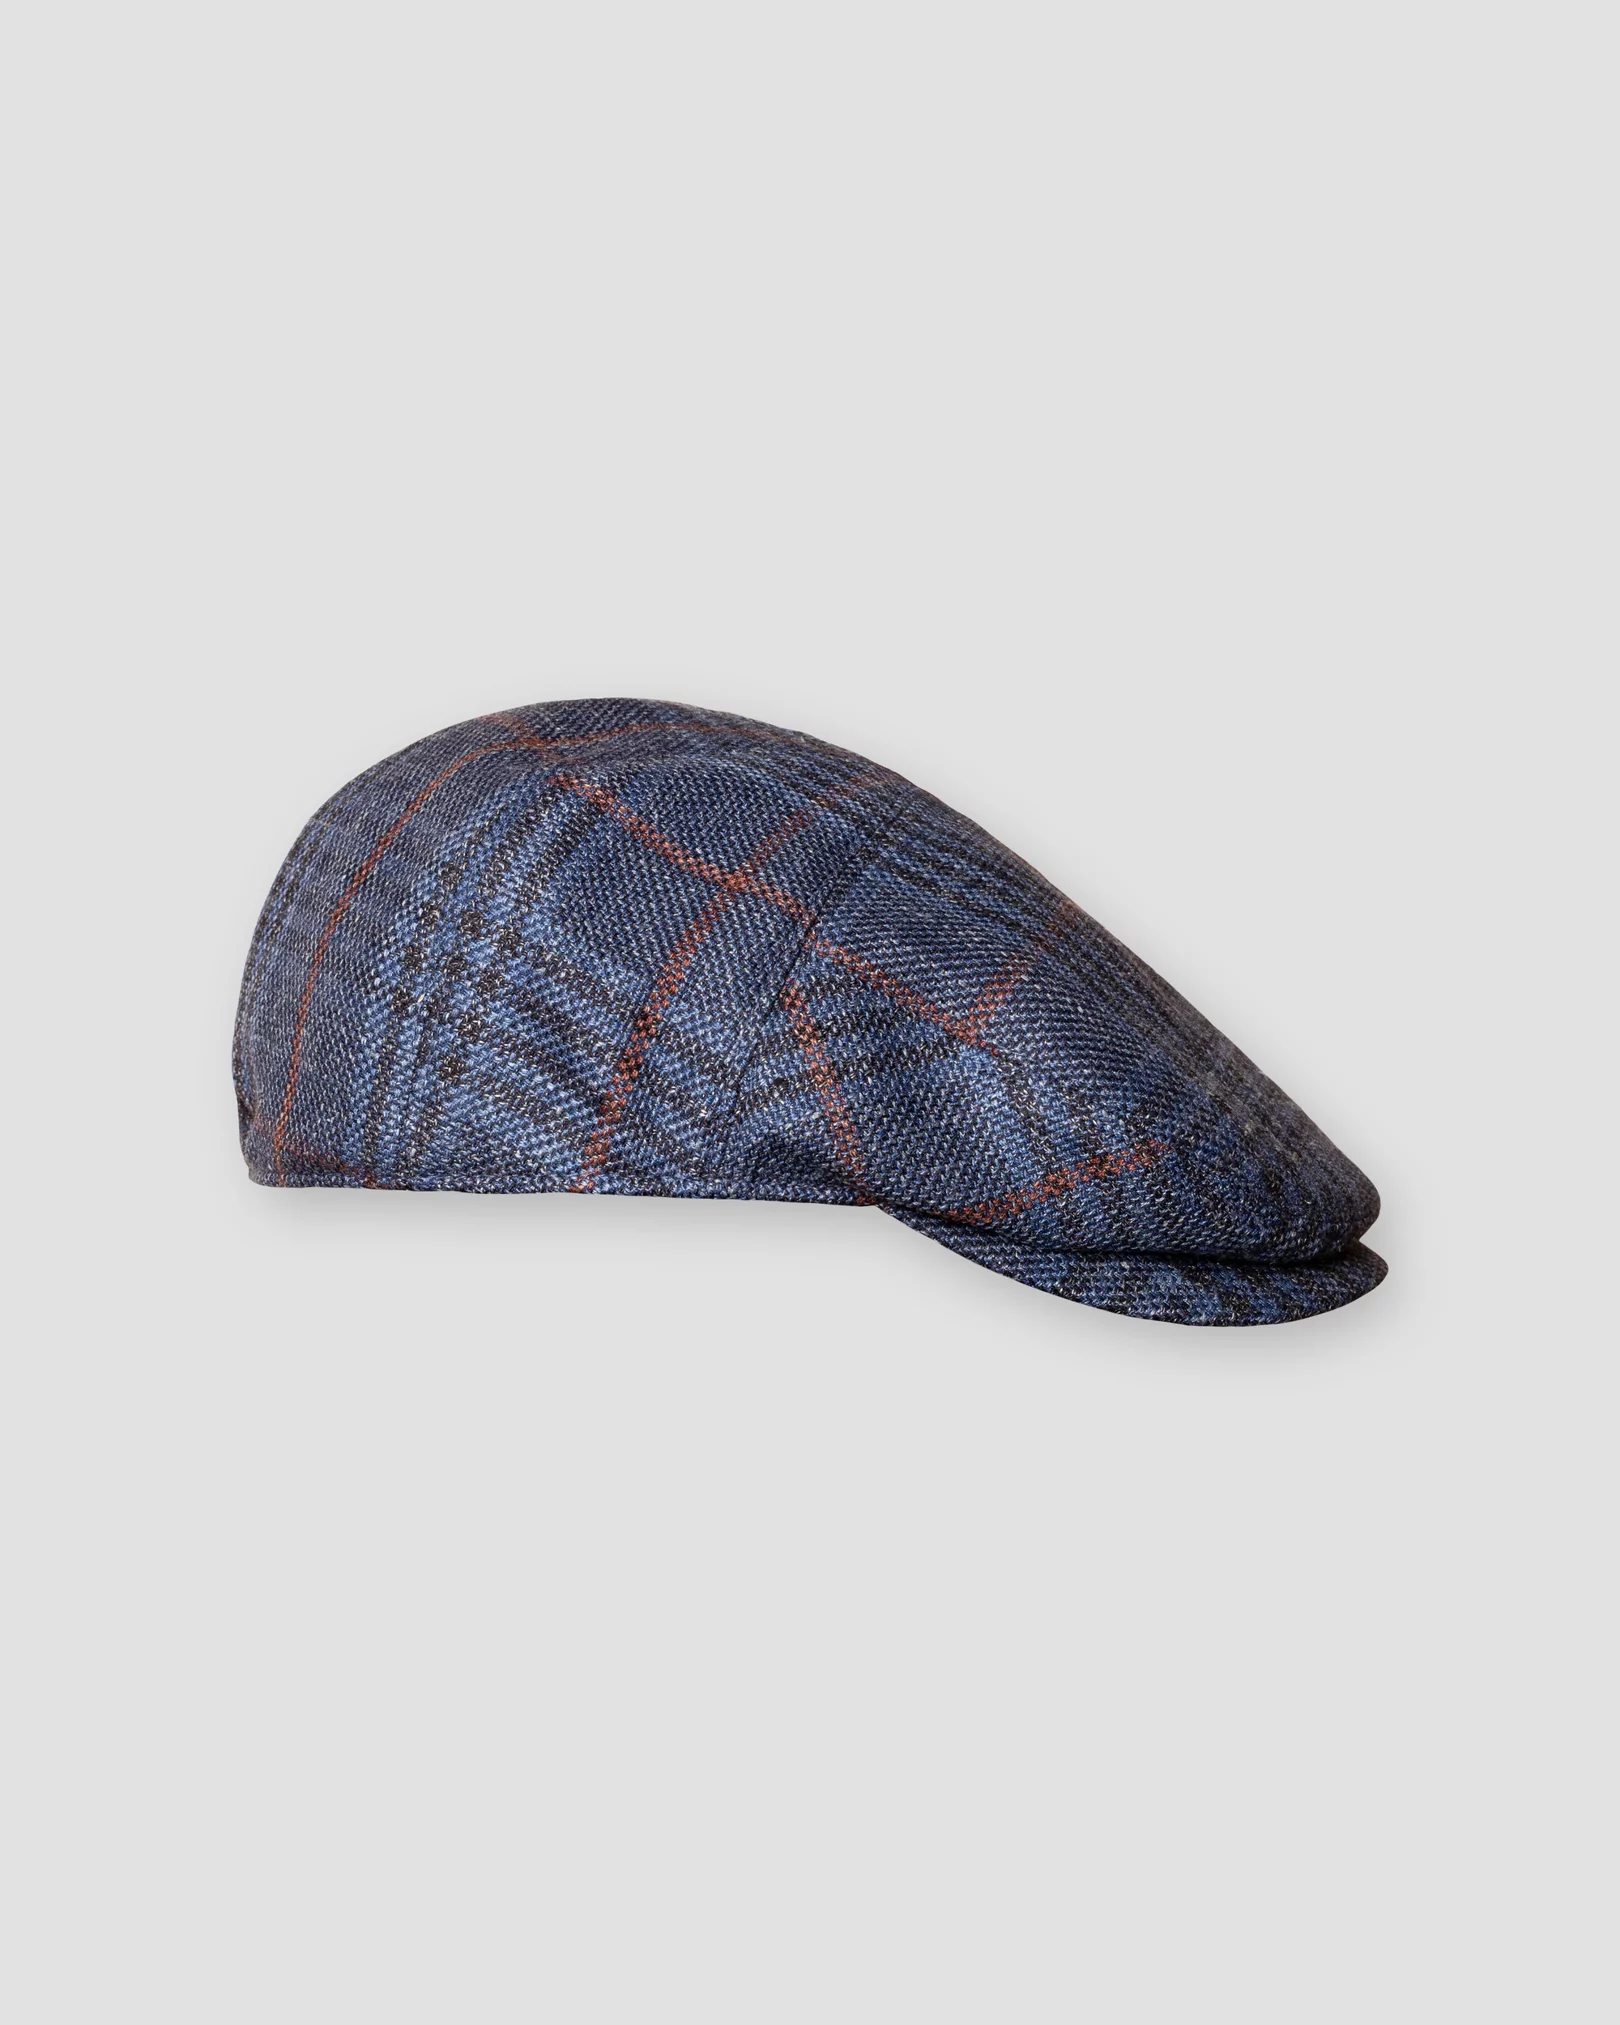 Eton - navy blue flat cap